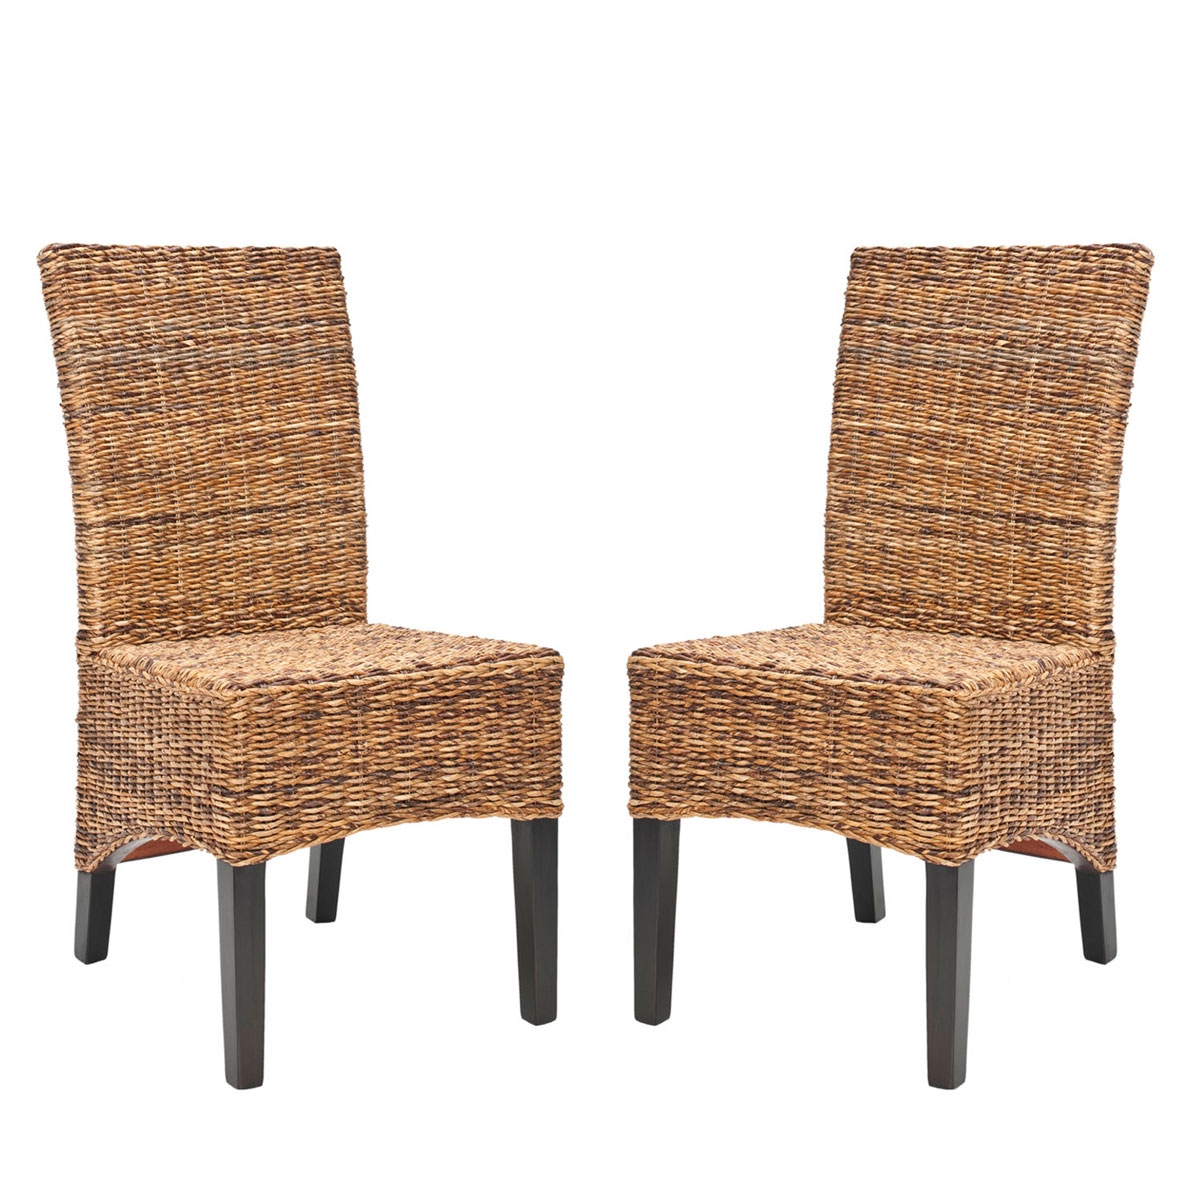 Siesta 18''H Wicker Side Chair (Set Of 2) - Dark Brown/Dark Colonial - Safavieh - Image 0